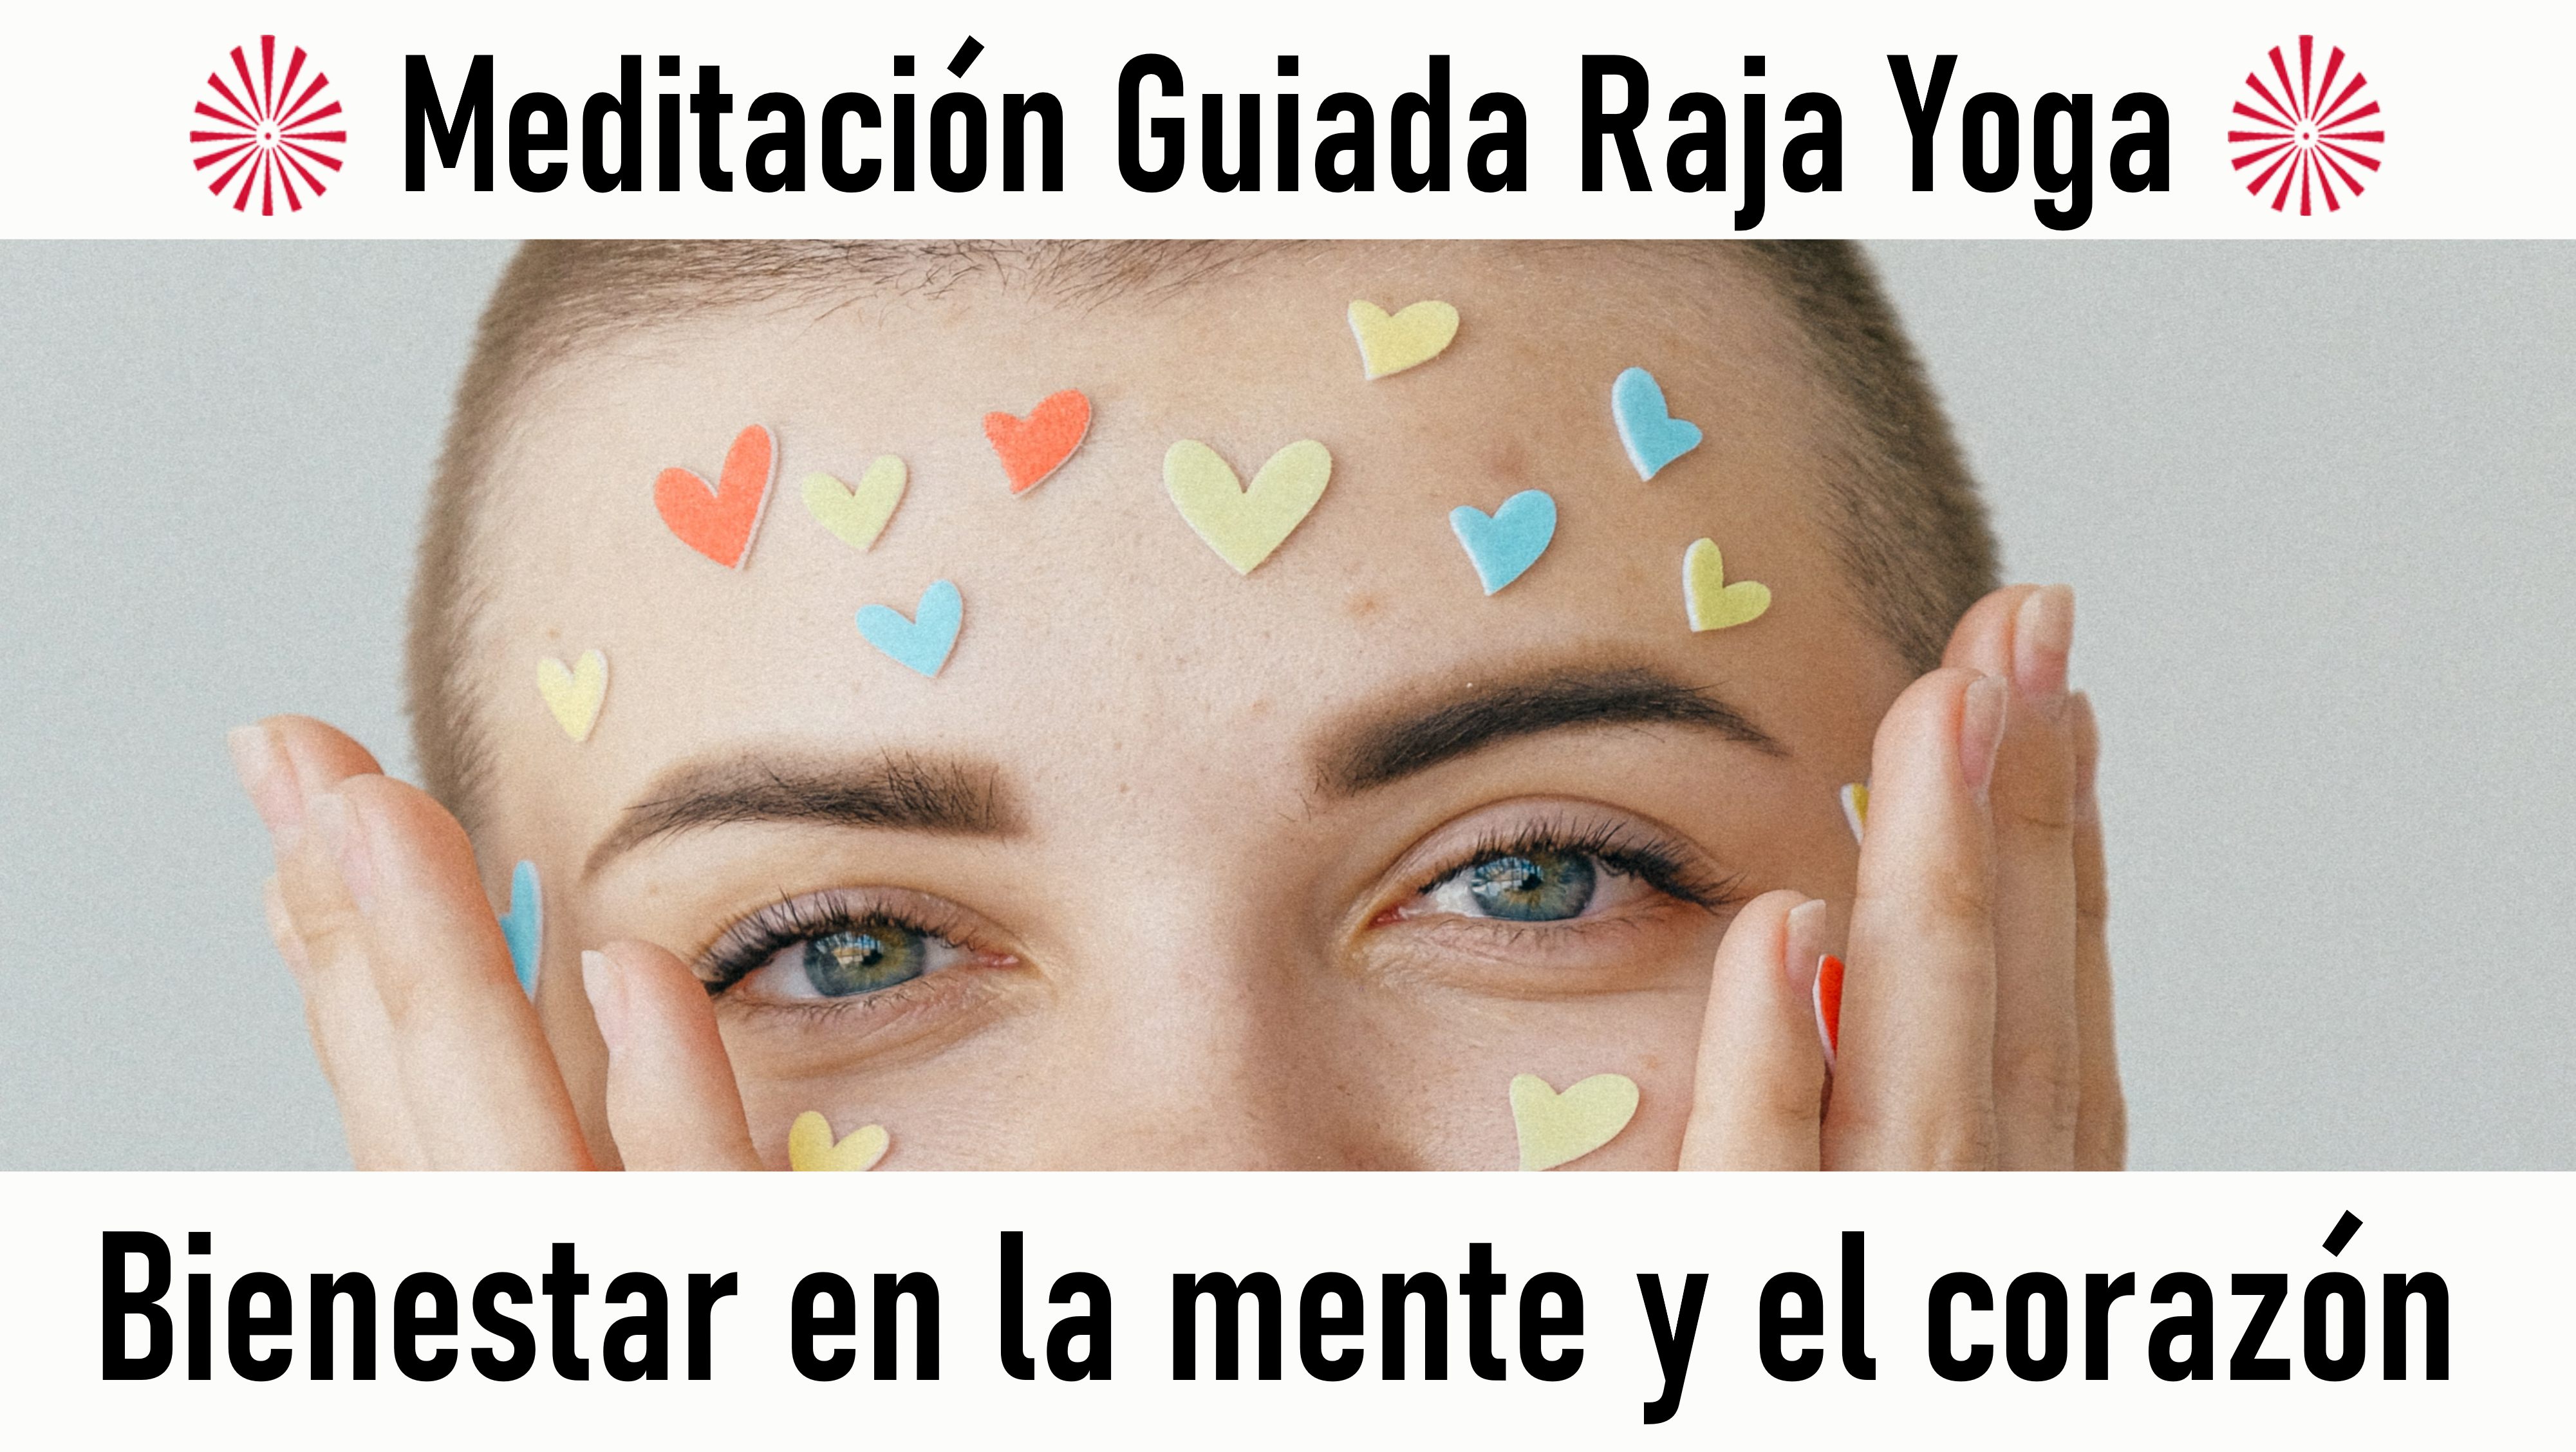 Meditación Raja Yoga: Bienestar en la mente, bienestar en el corazón (3 Septiembre 2020) On-line desde Madrid